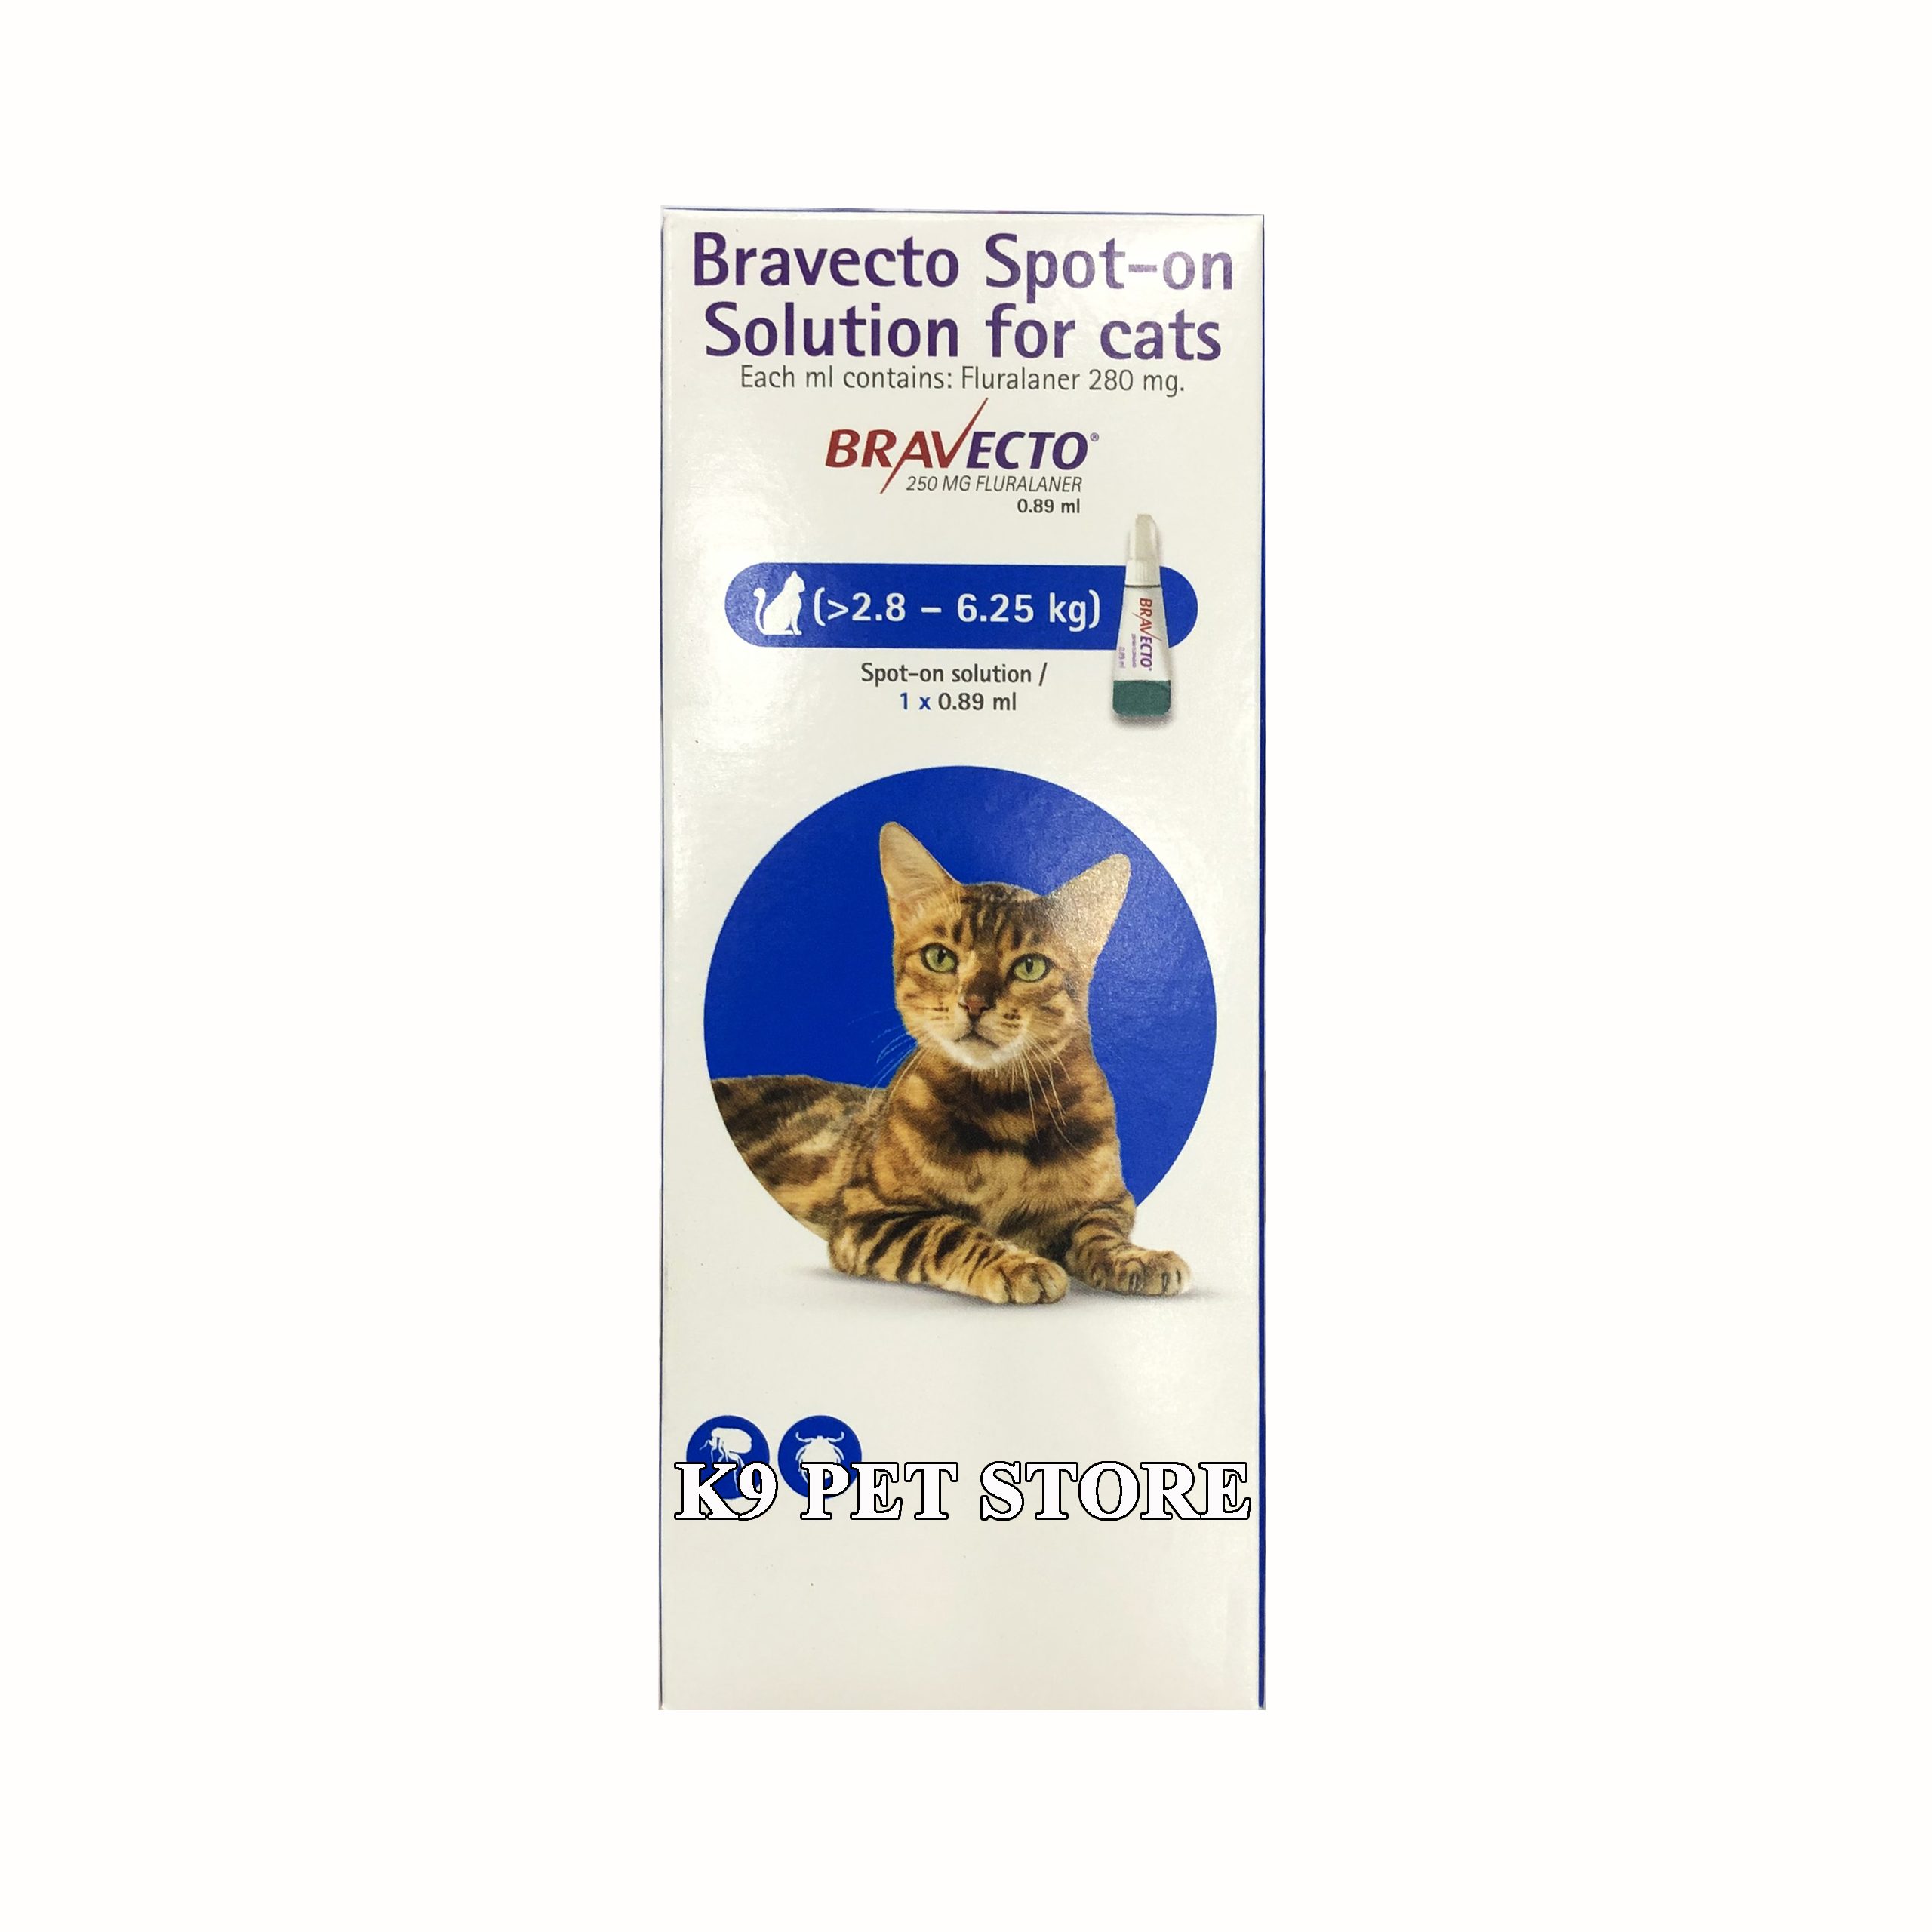 Bravecto for cat 2.8 - 6.25kg - Nhỏ gáy trị ve rận, bọ chét, viêm da cho mèo